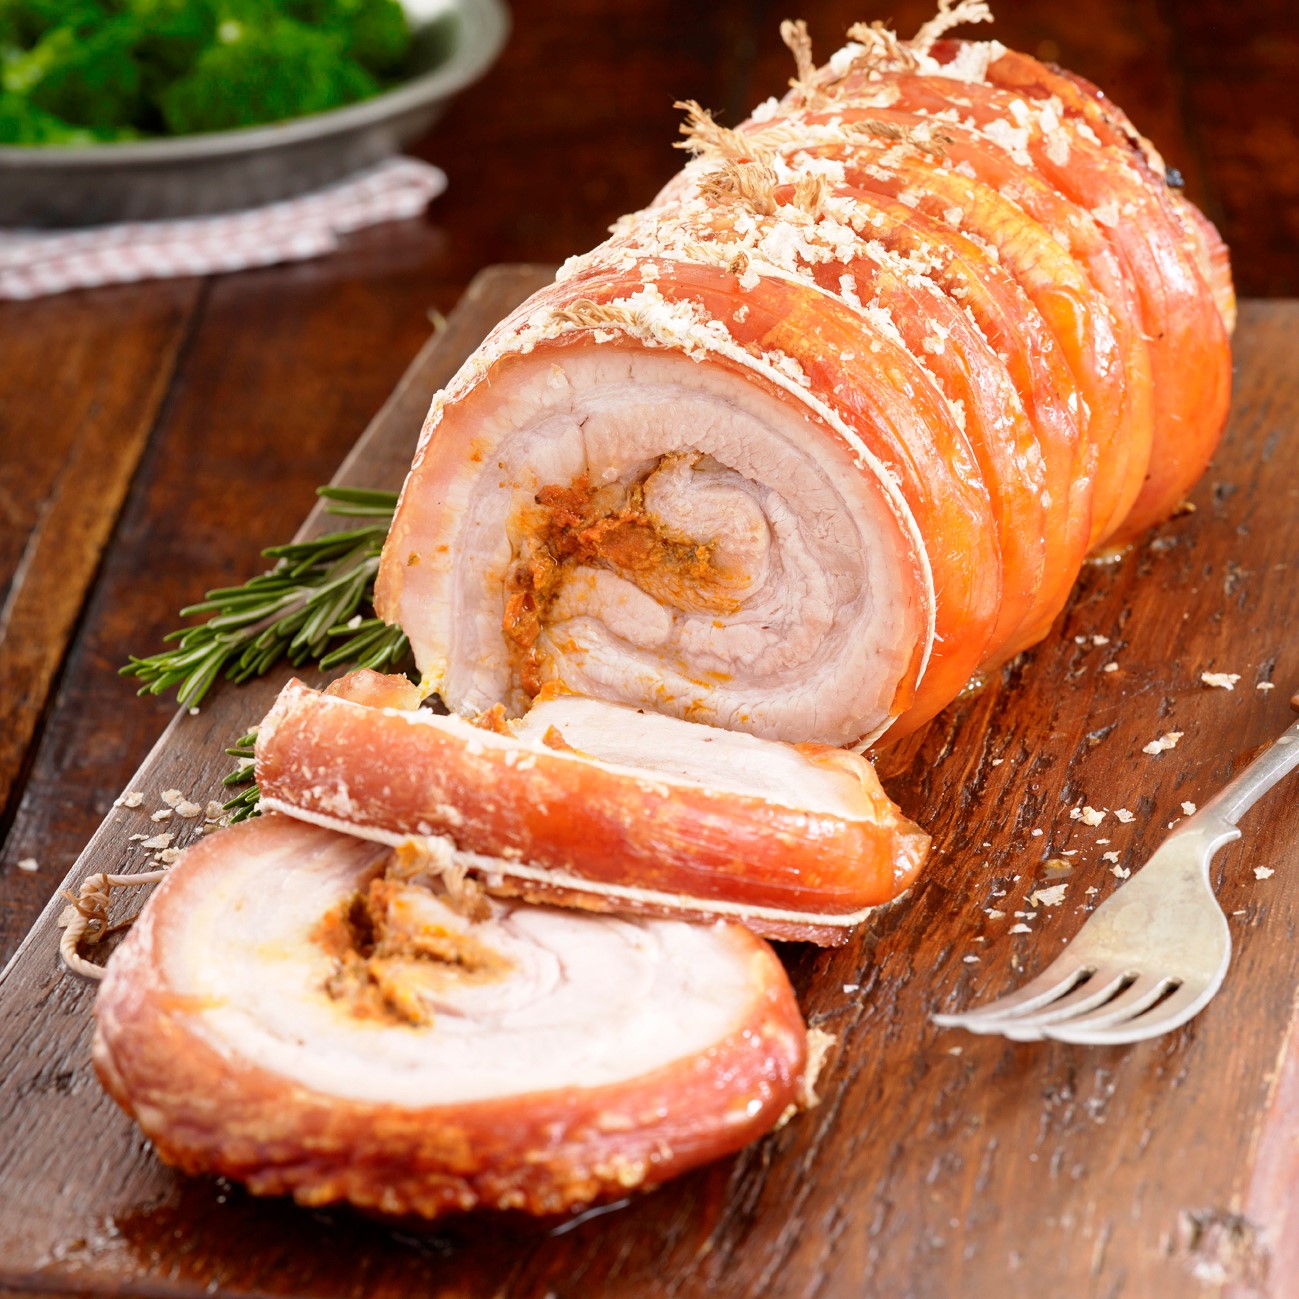 Le porc est un autre type de viande délicieux, et le bacon est un favori de beaucoup de personnes à la diète faible en glucides.